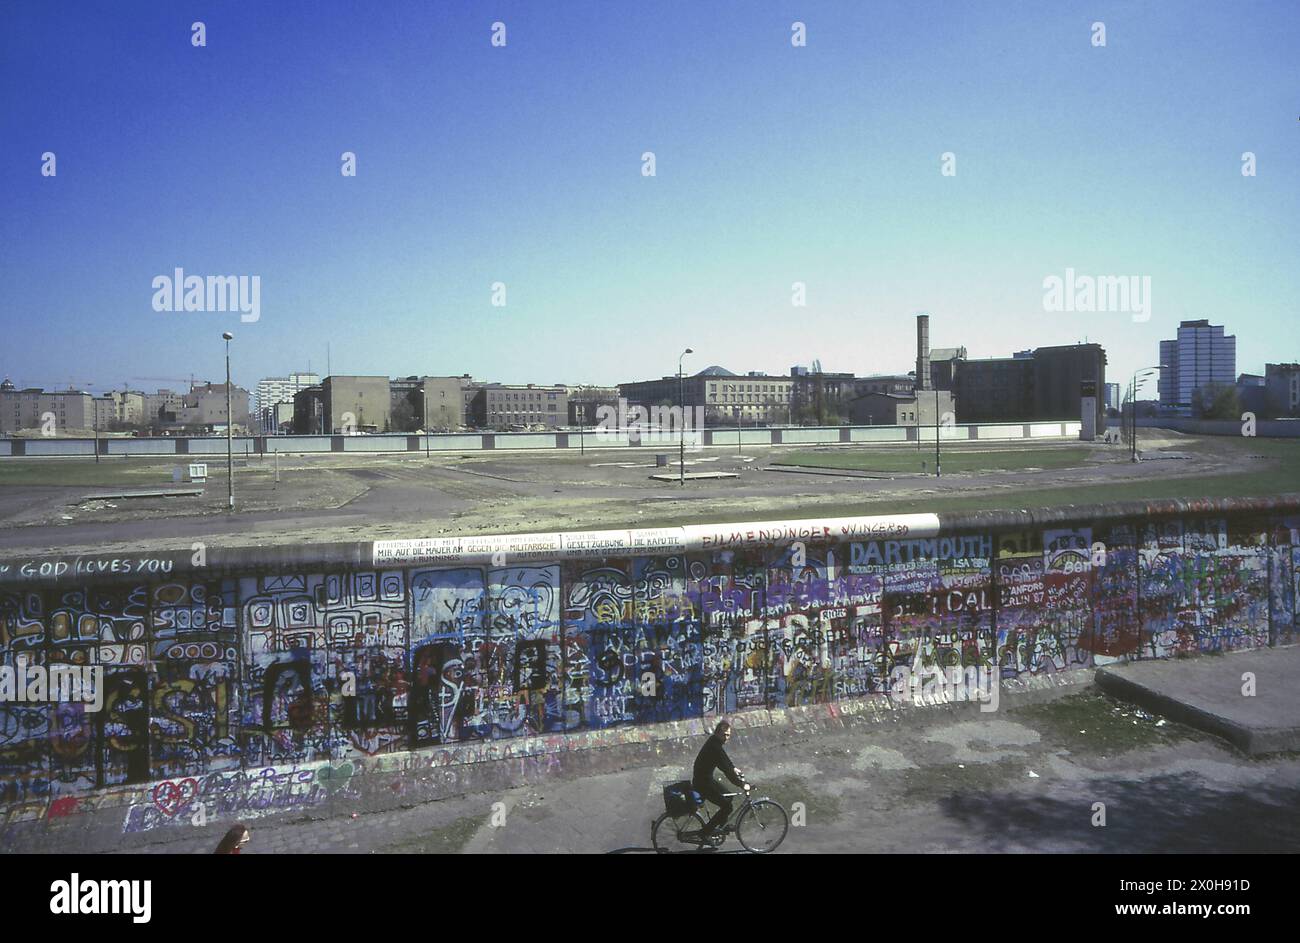 Il muro dipinto con graffiti a Potsdamer Platz. L'ottagono di Leipziger Platz è chiaramente visibile nell'area di confine tra le due mura. Allo stesso modo, gli ingressi recintati alla stazione della metropolitana e alla stazione S-Bahn accanto ad essa, uno dei cui ingressi a Berlino Ovest è chiuso da un pannello sul lato destro. Tutto il resto nella stazione è a Berlino Est. Dopo la riunificazione, non è più possibile vedere senza ostacoli gli ex edifici del governo prussiano. [traduzione automatizzata] Foto Stock